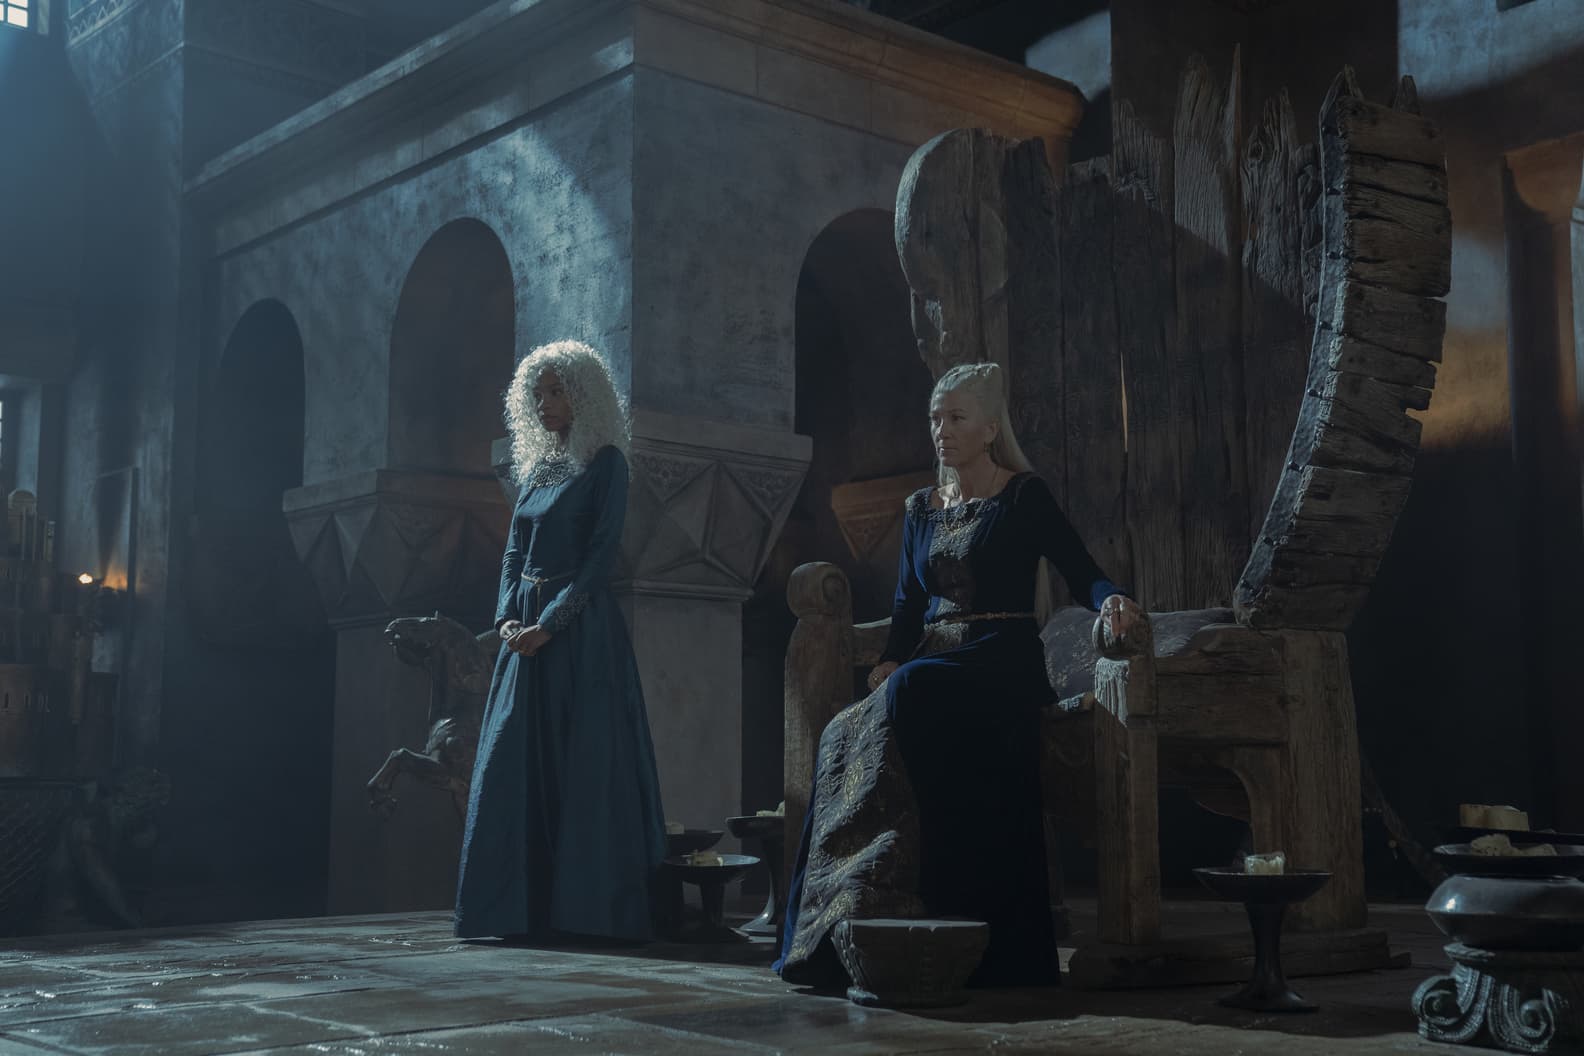 Bethany Antonia como Baela Targaryen y Eve Best como la Princesa Rhaenys Targaryen en House of The Dragon (La Casa del Dragón) 1x08